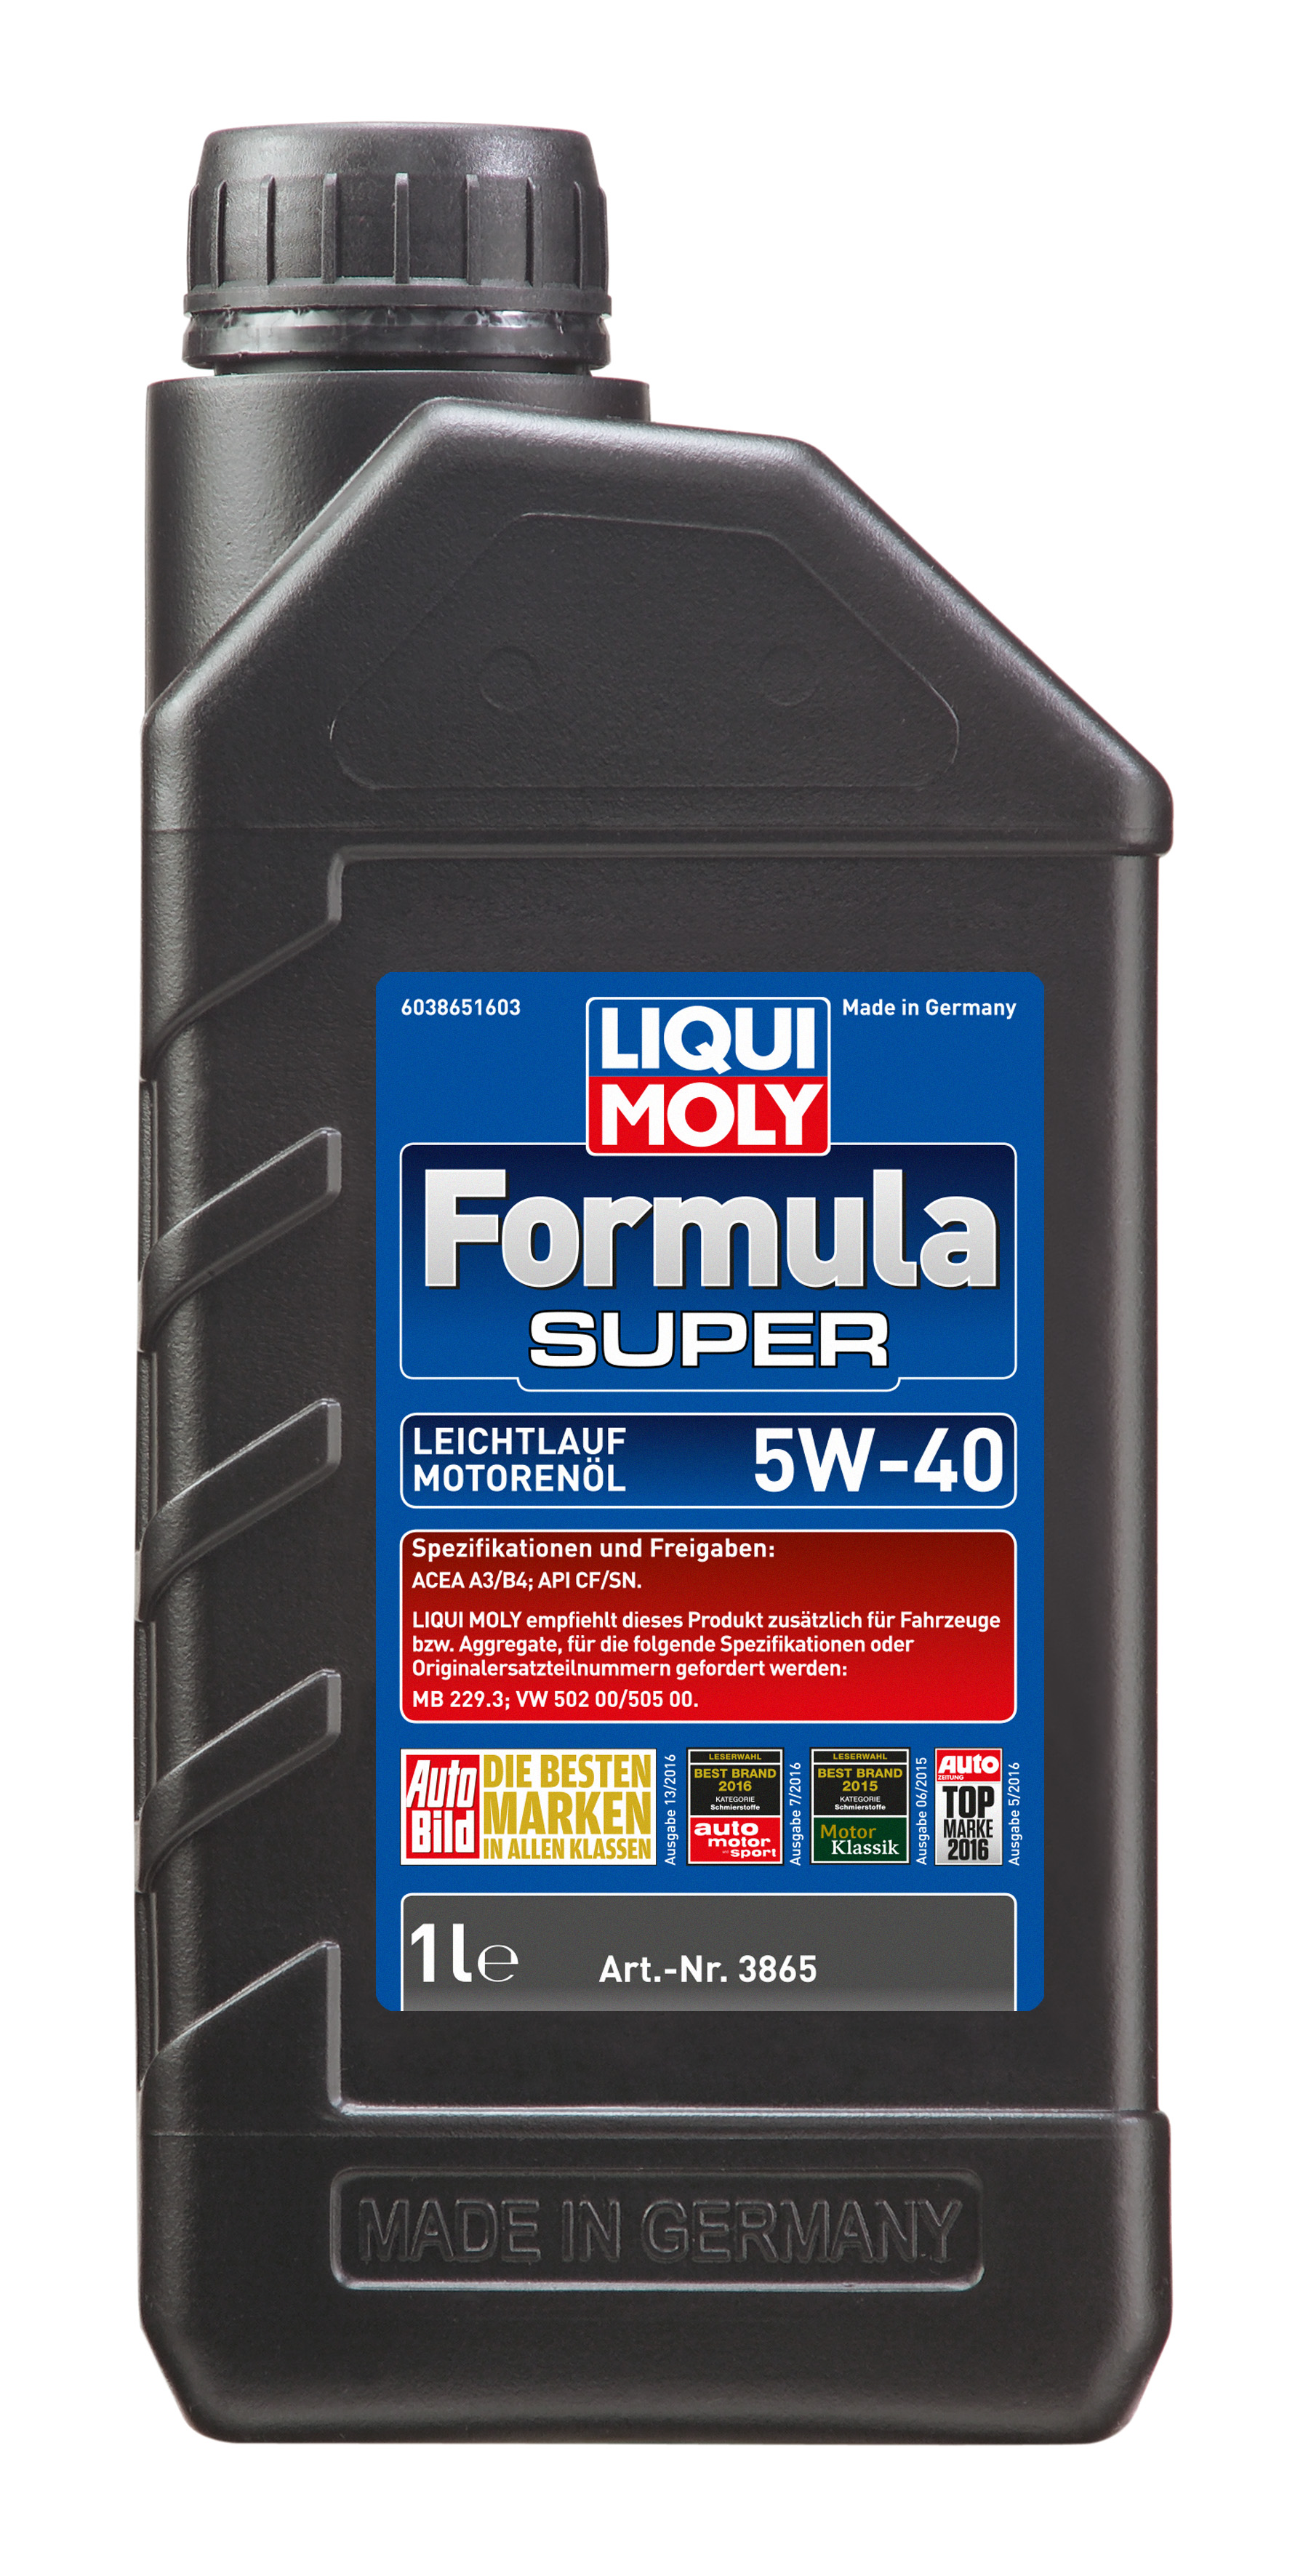 LIQUI MOLY FORMULA SUPER 5W-40 1L